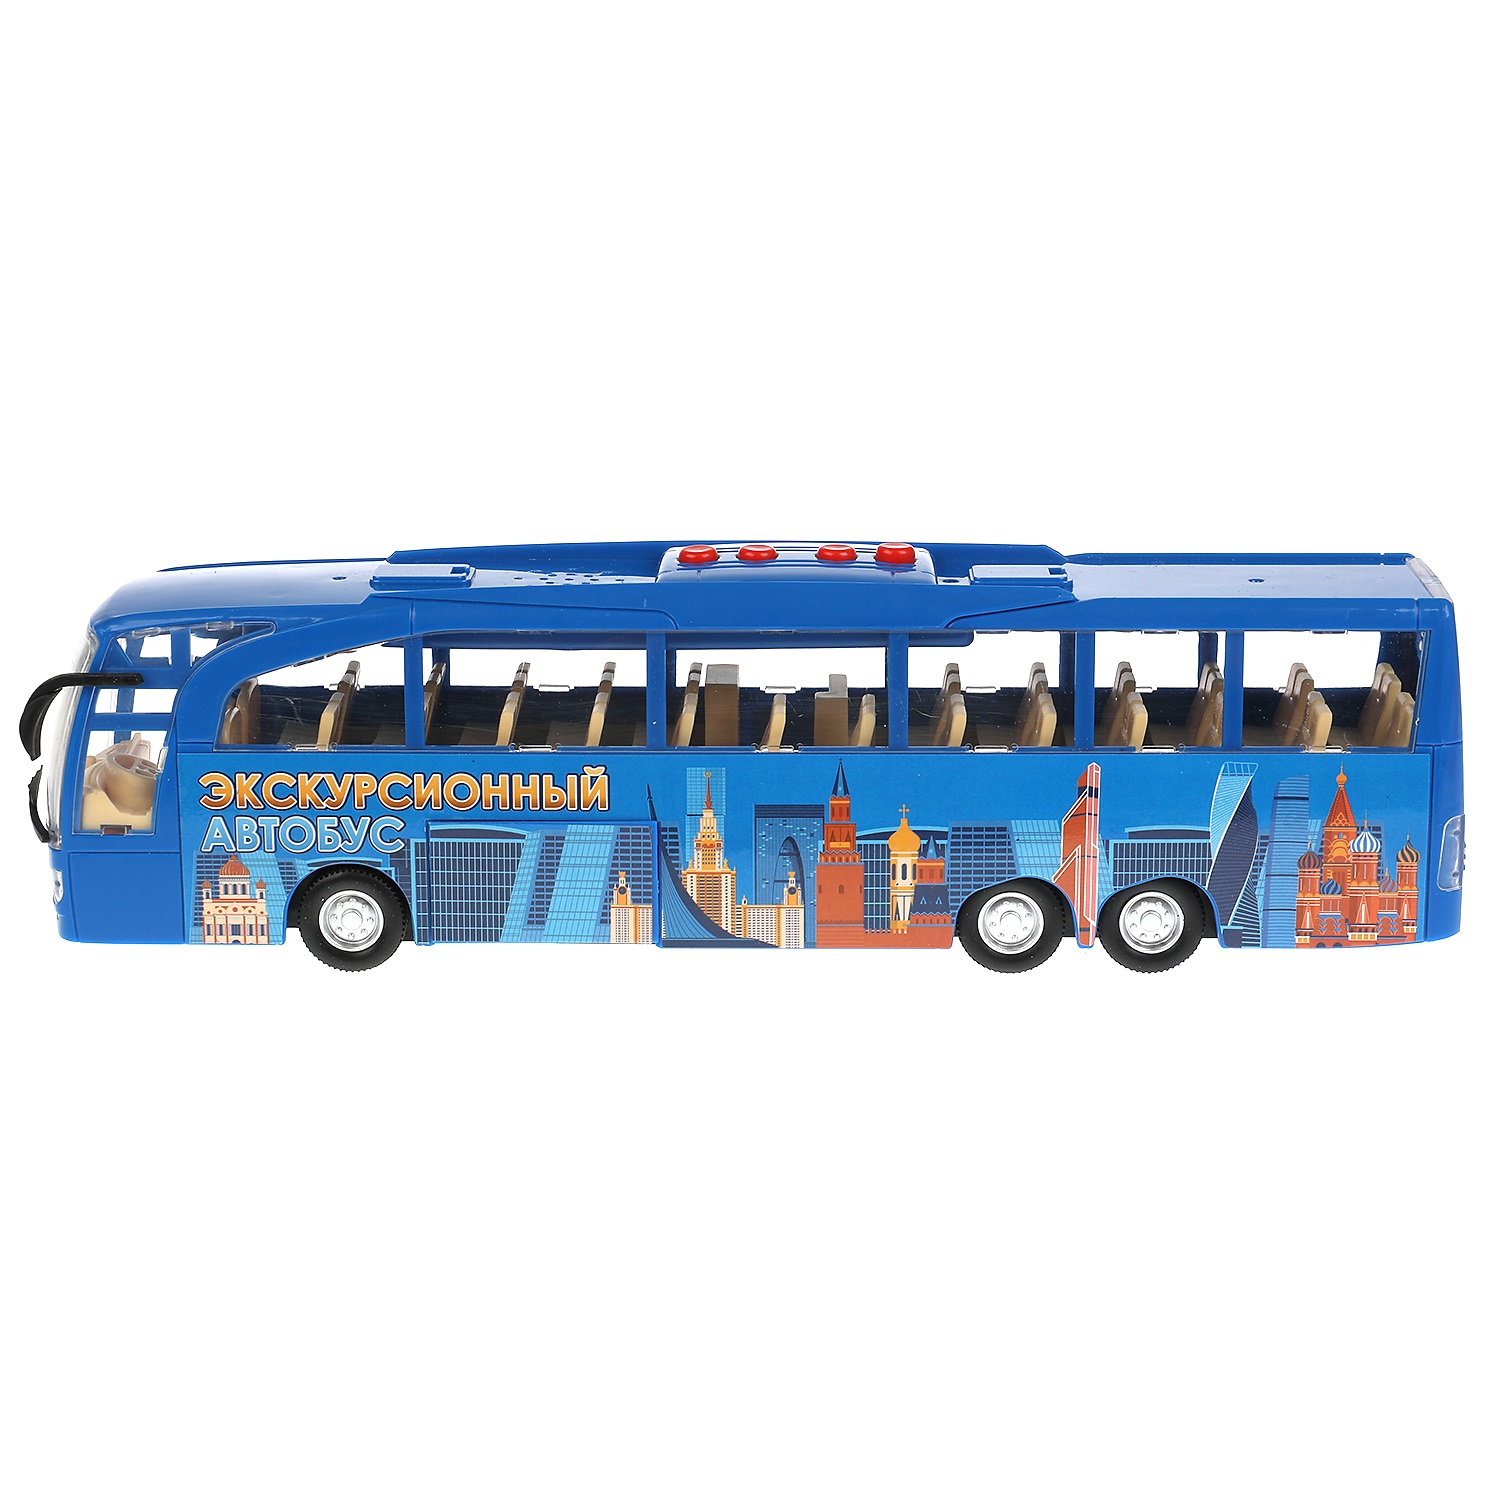 Модель Экскурсионный автобус 30 см свет-звук двери открываются пластиковая инерционная синий  